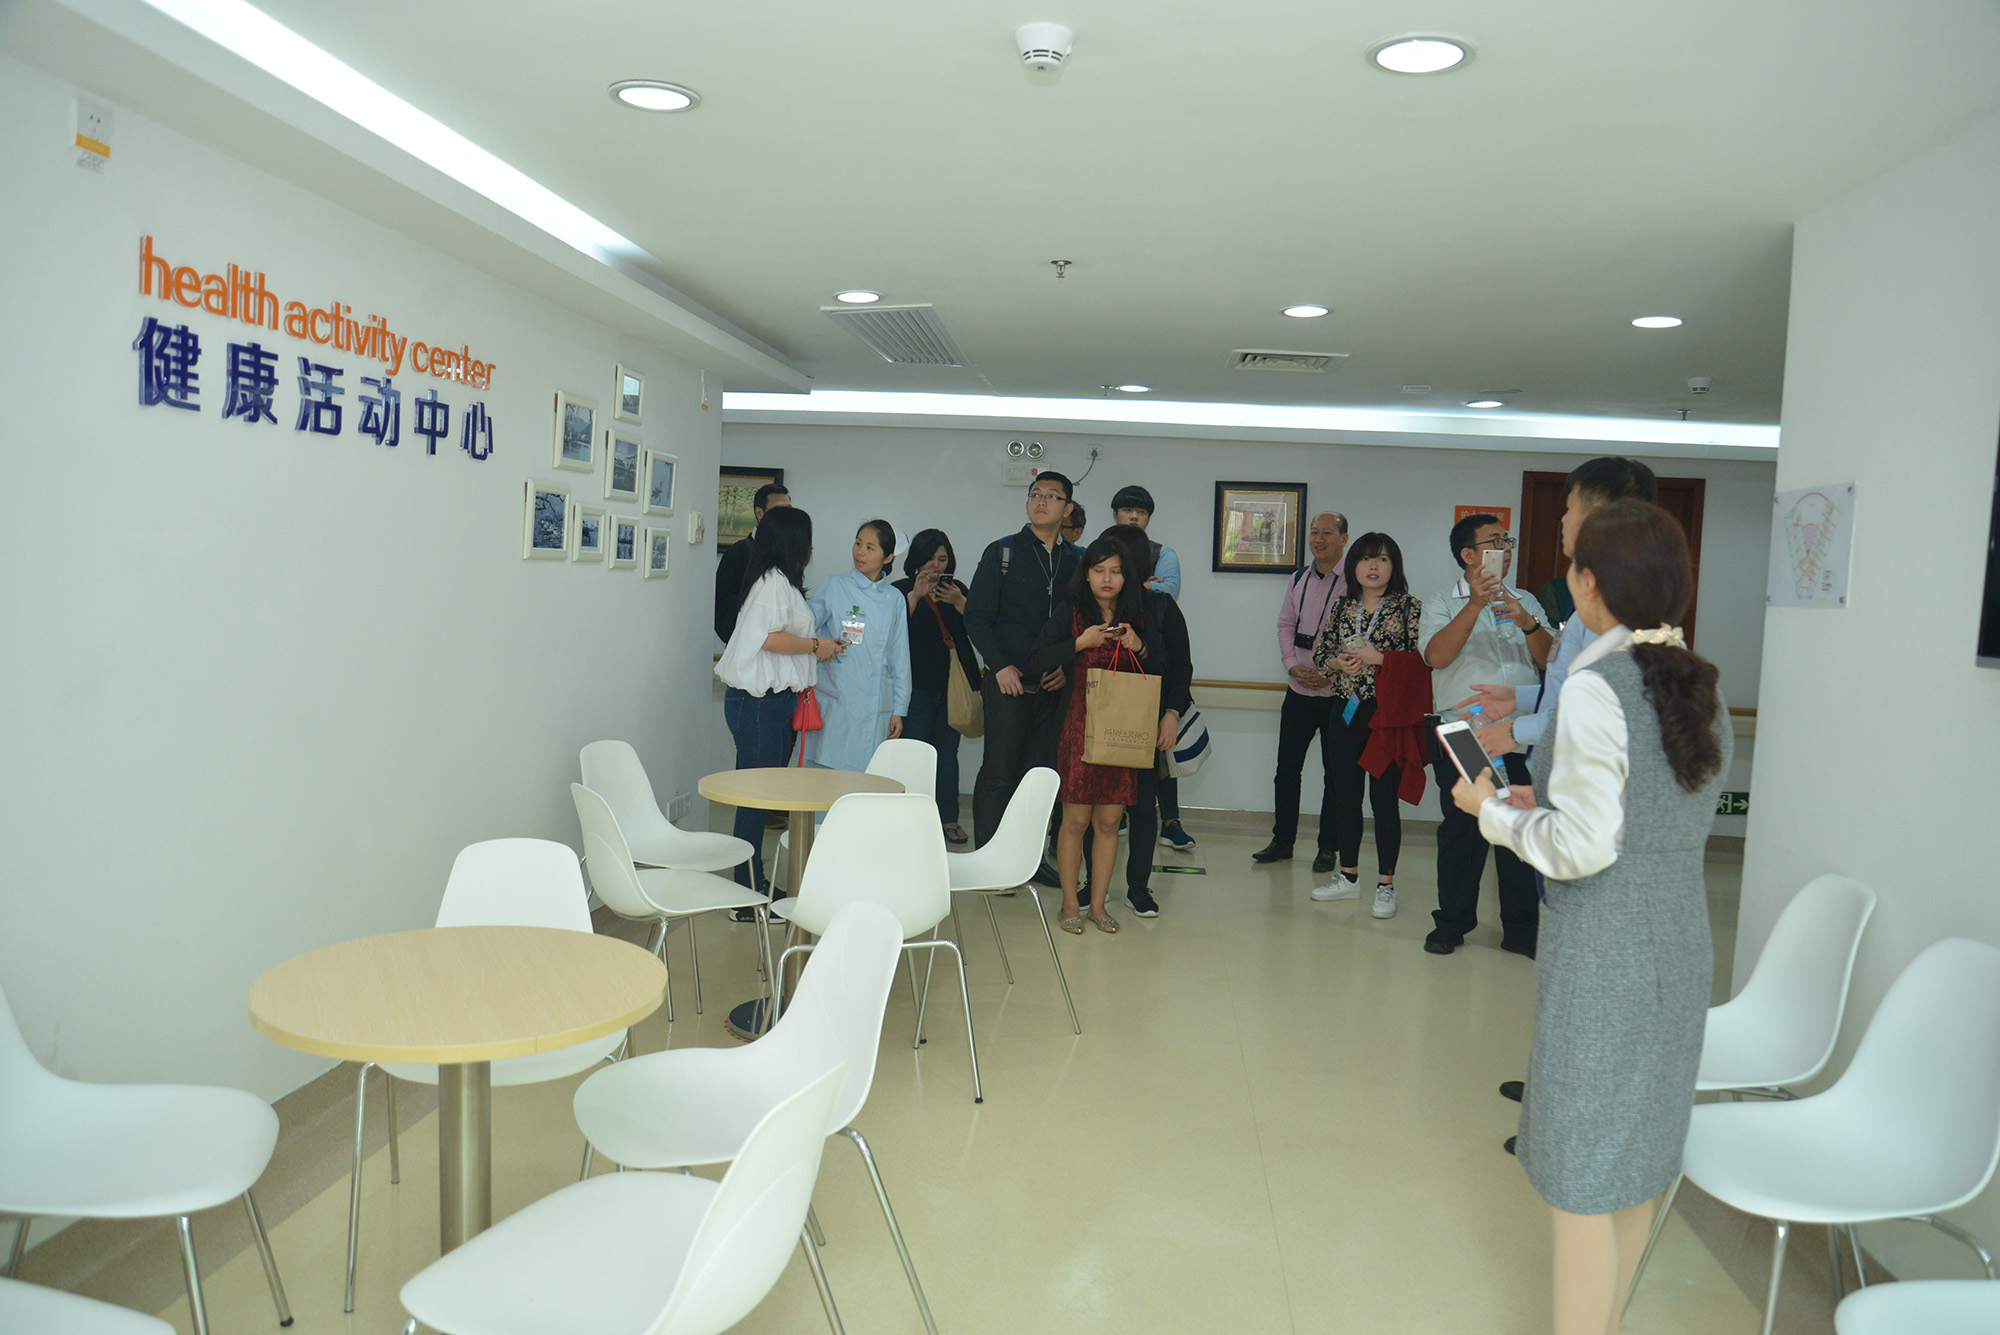 印尼医疗访问团参观健康活动中心